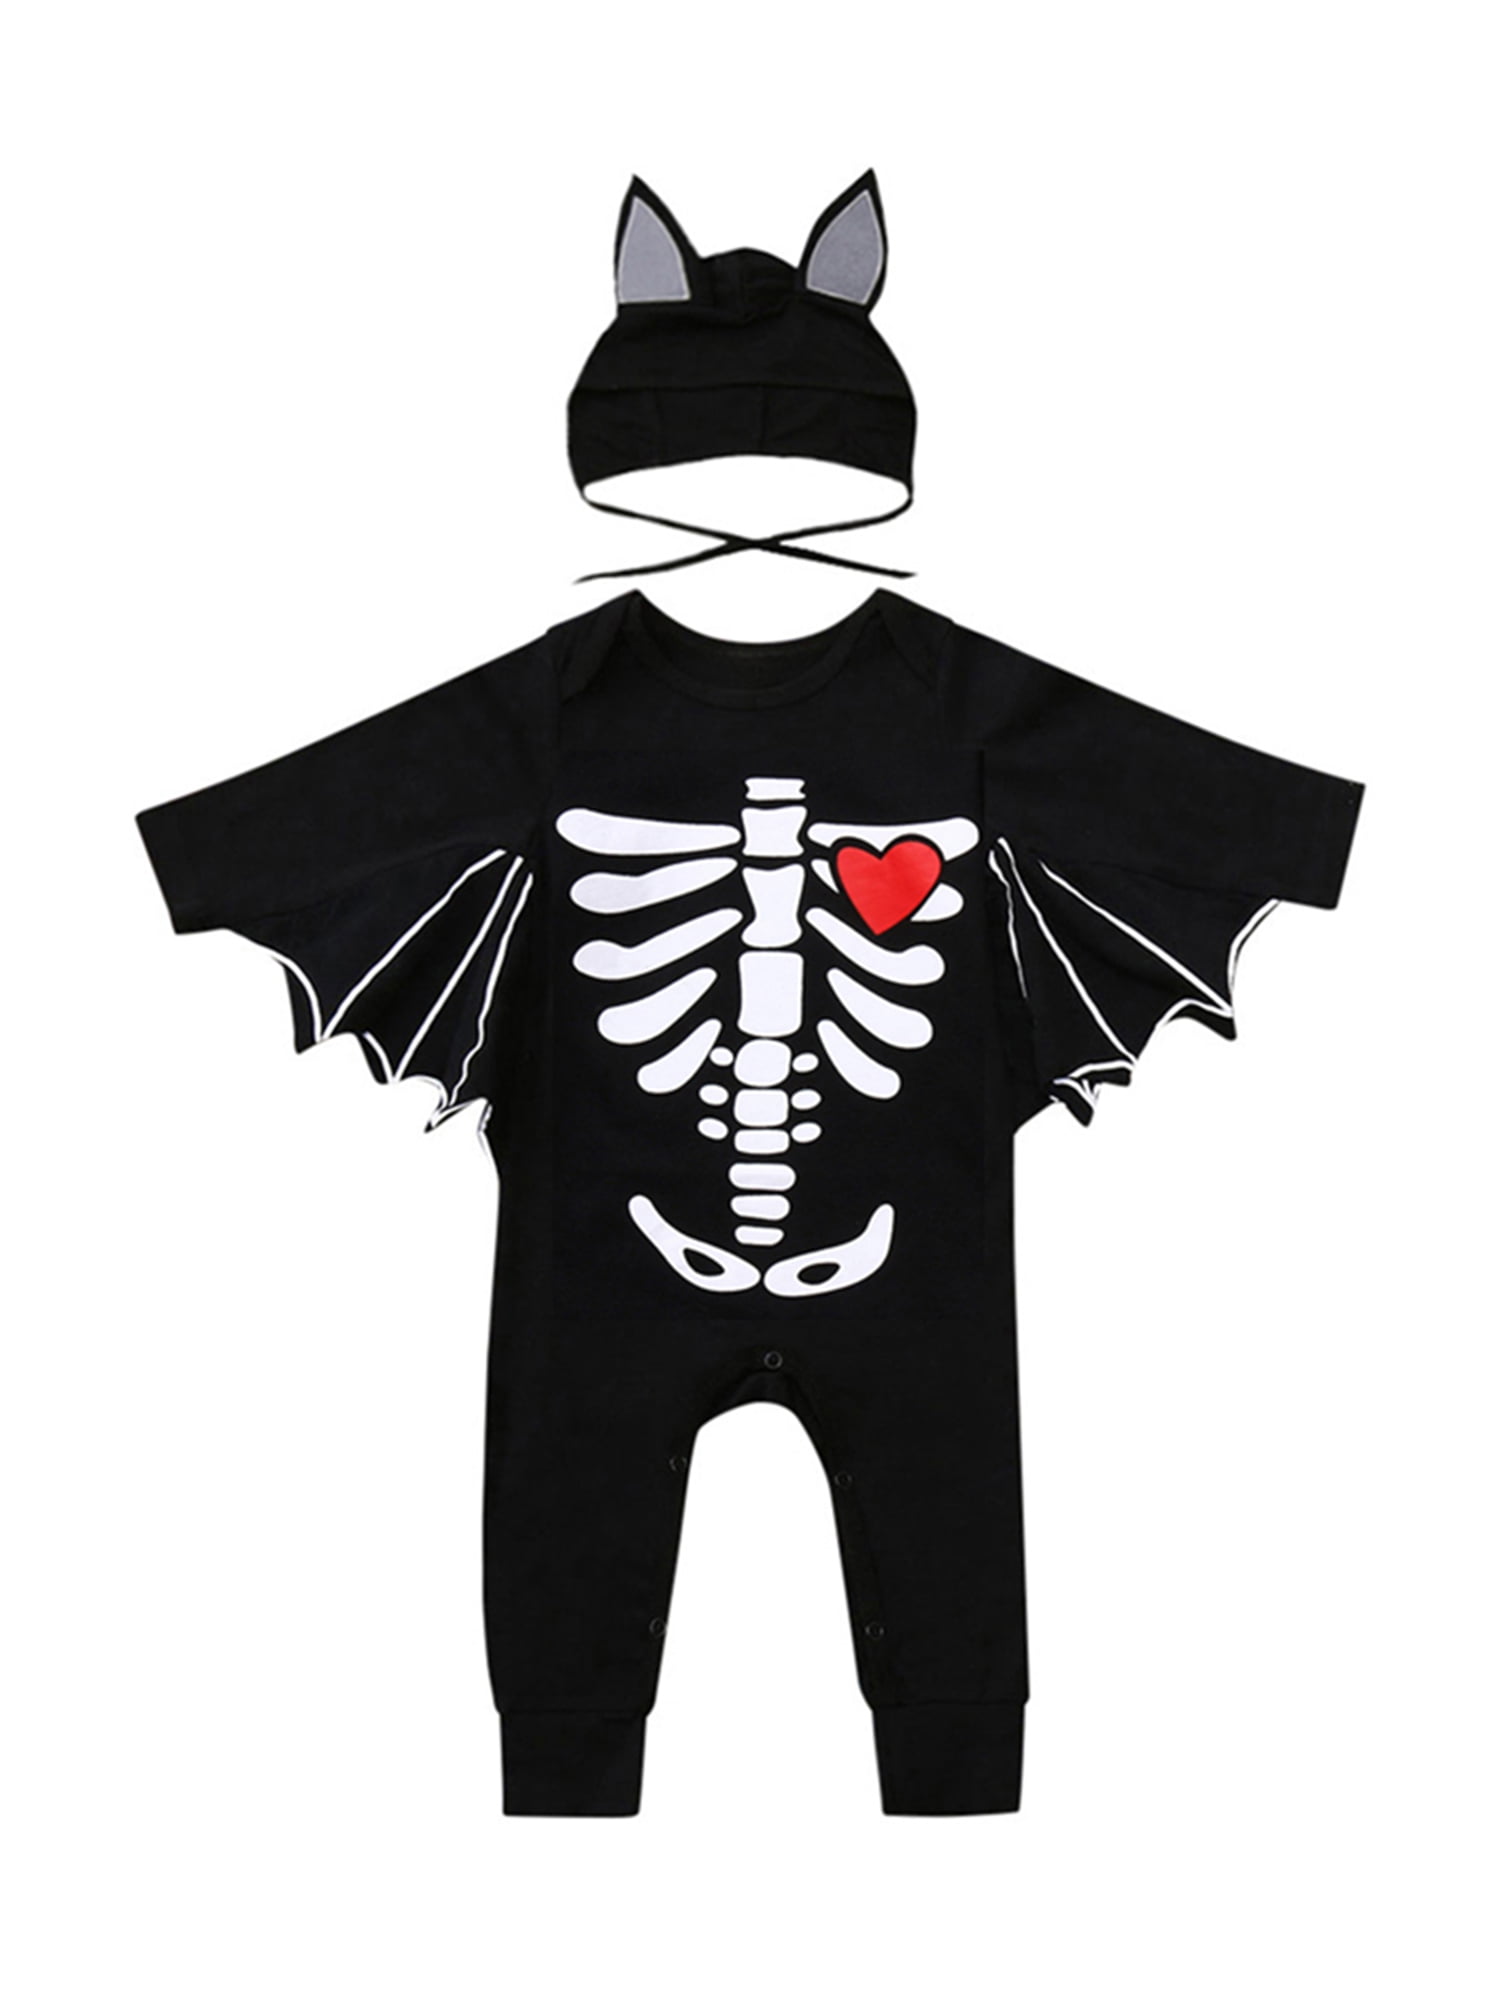 Horror Skull Print Art Boys & Girls Black Short Sleeve Romper Bodysuit Outfits for 0-24 Months 